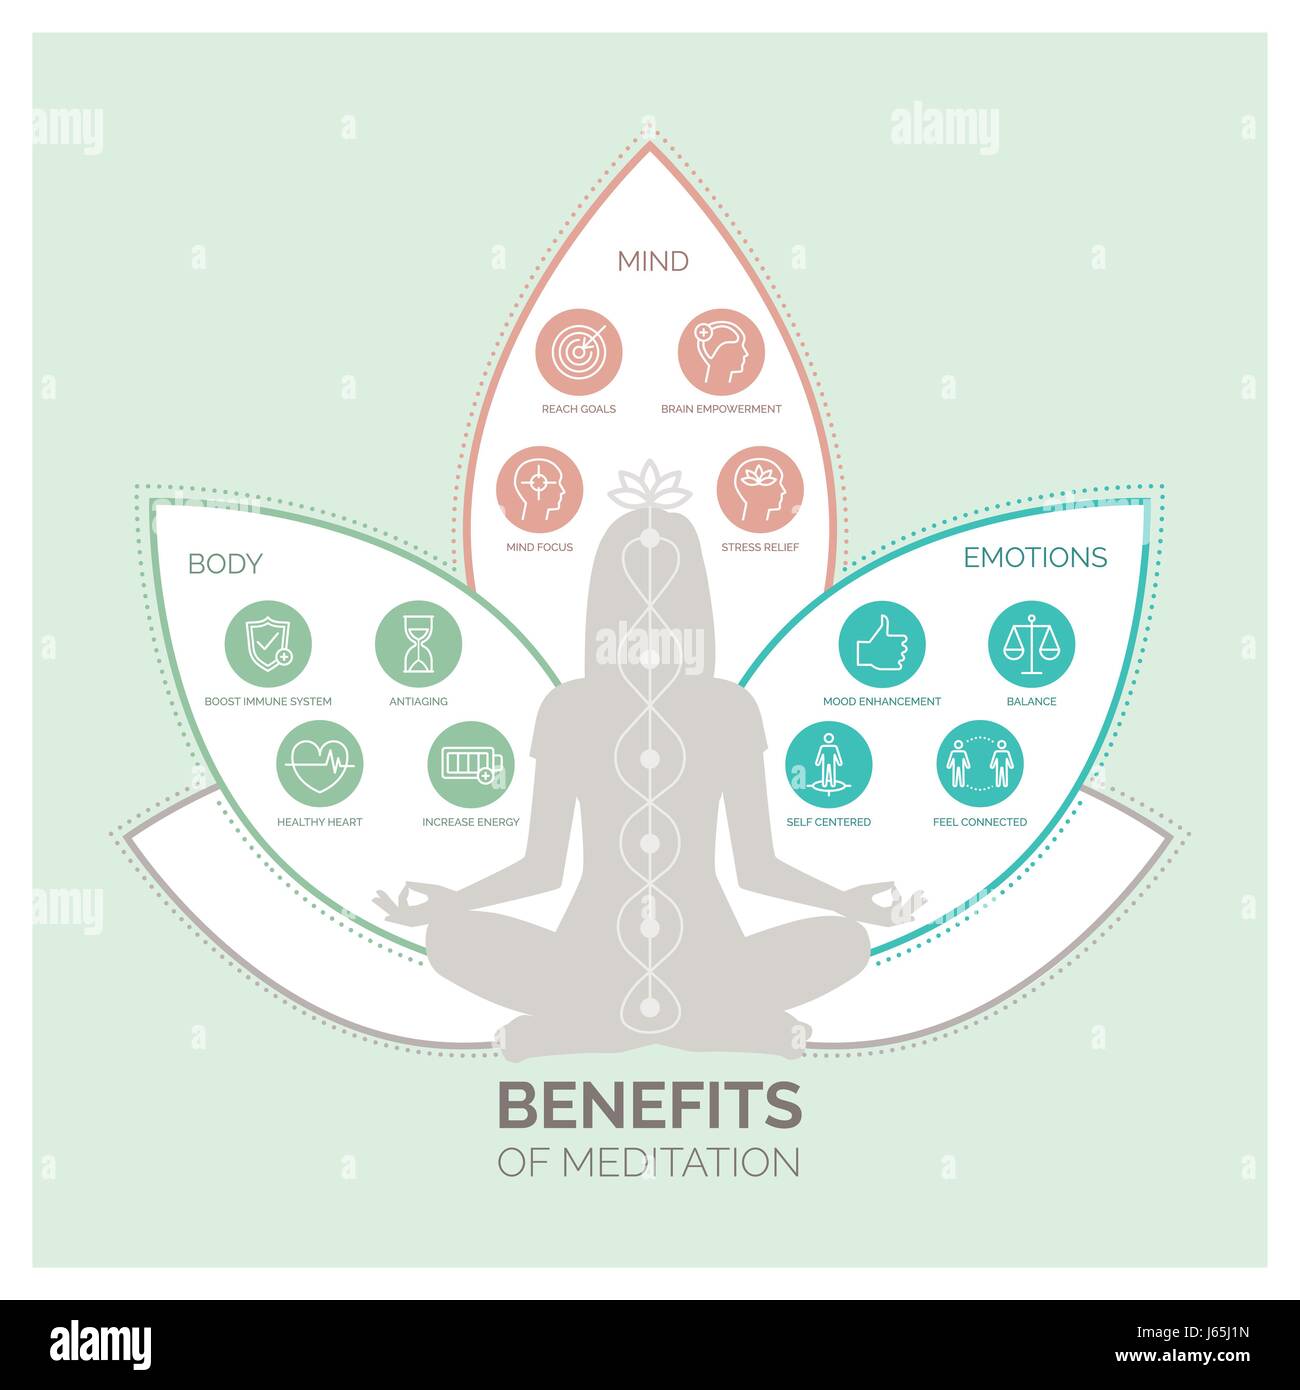 La méditation bénéfique pour la santé des corps, esprit et émotions, vector infographic avec icons set Illustration de Vecteur